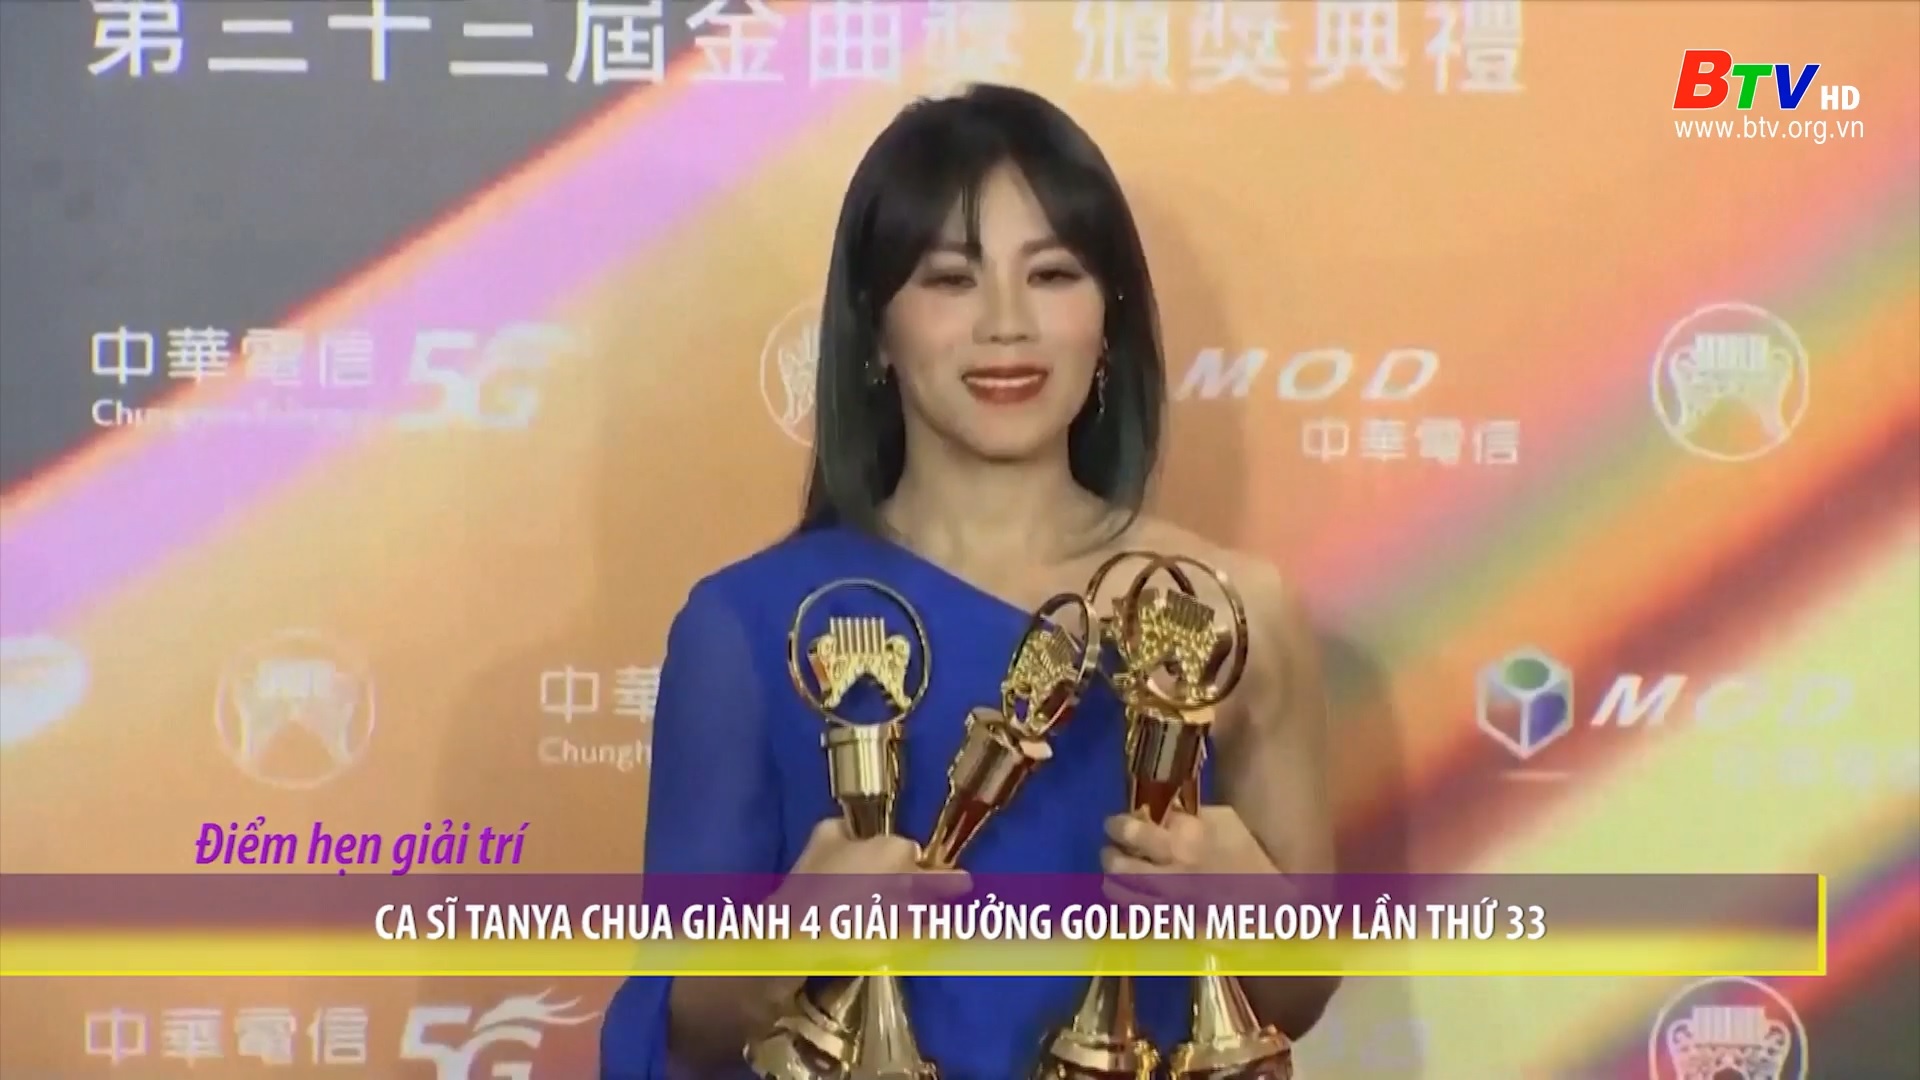 Ca sĩ Tanya Chua giành 4 giải thưởng Golden Melody lần thứ 33